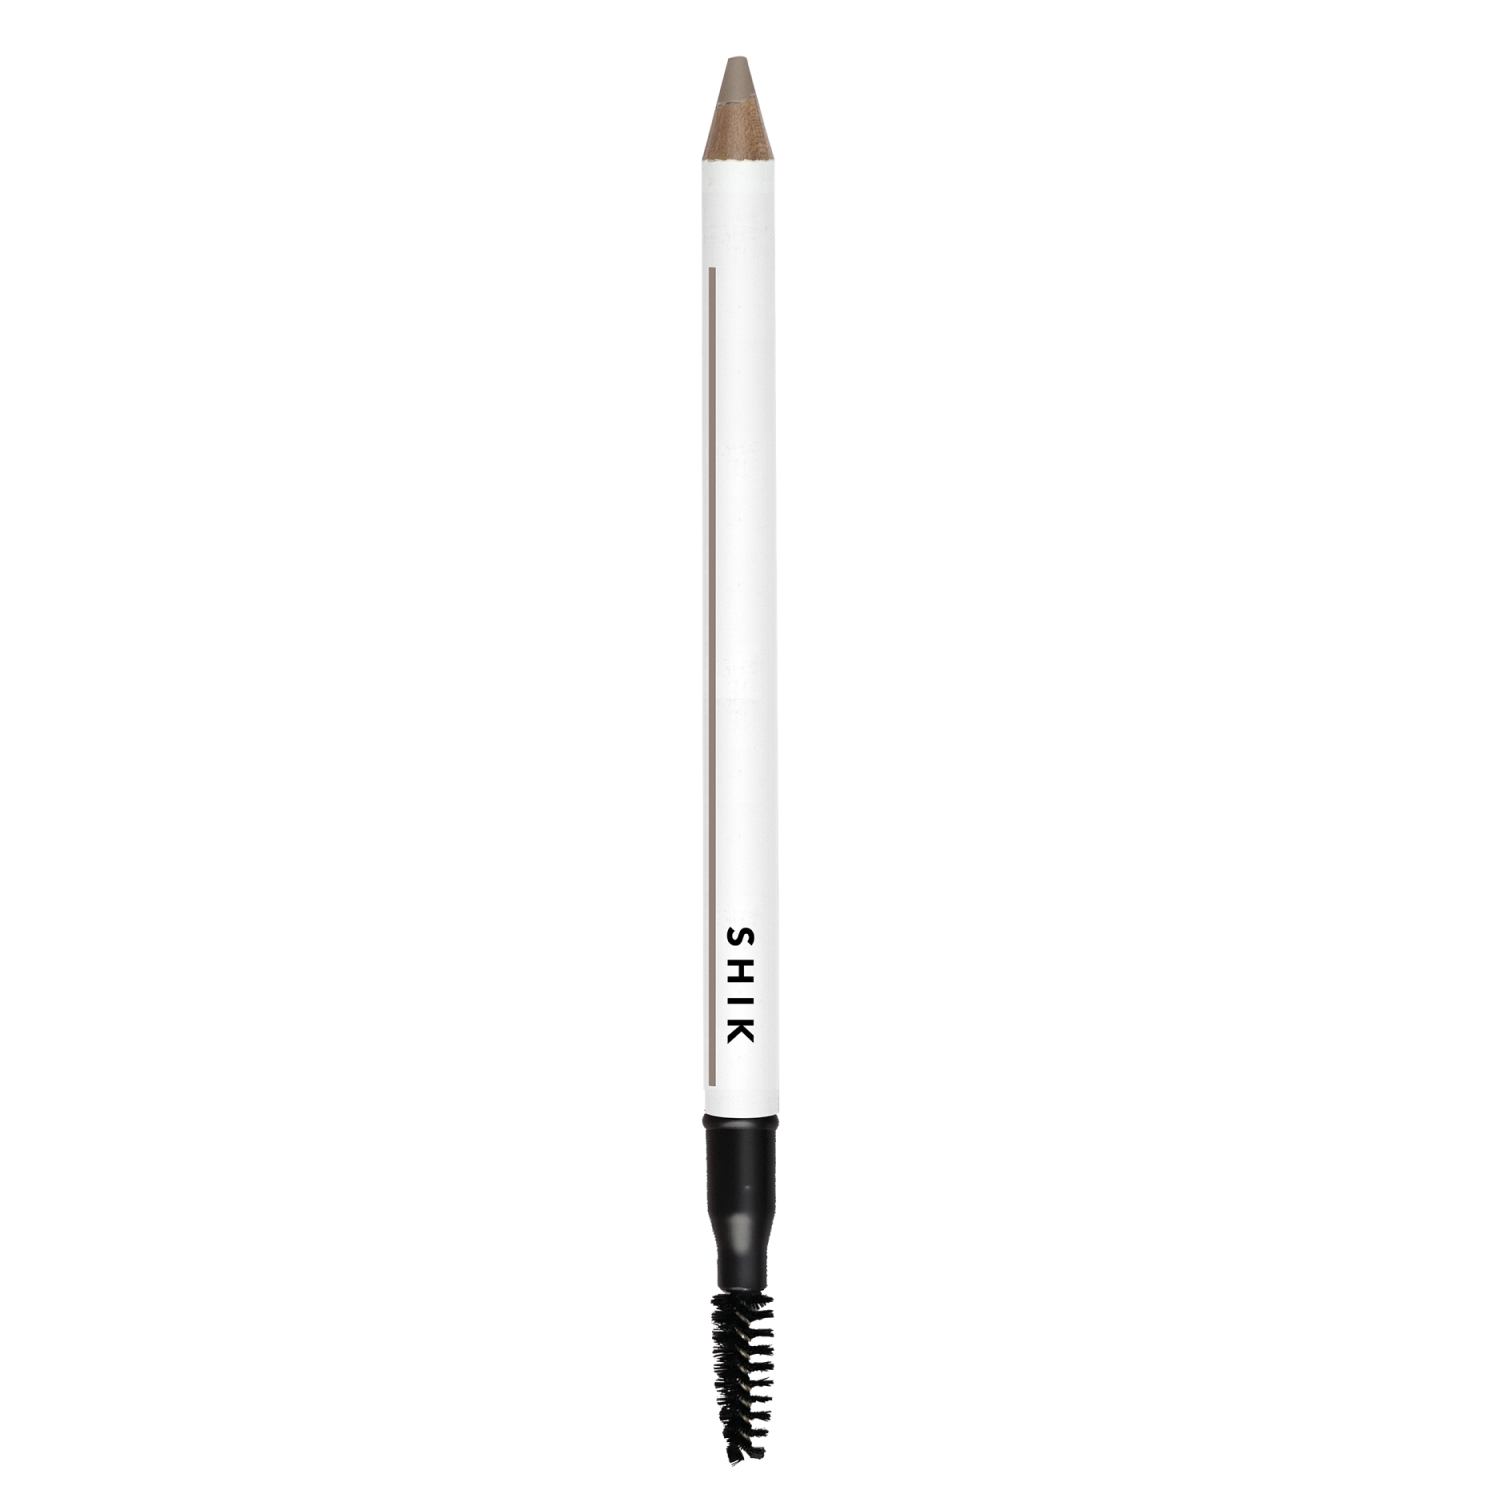 SHIK BROW POWDER PENCIL карандаш для бровей стойкий пудровый с щеточкой MEDIUM 1, 19г  - купить